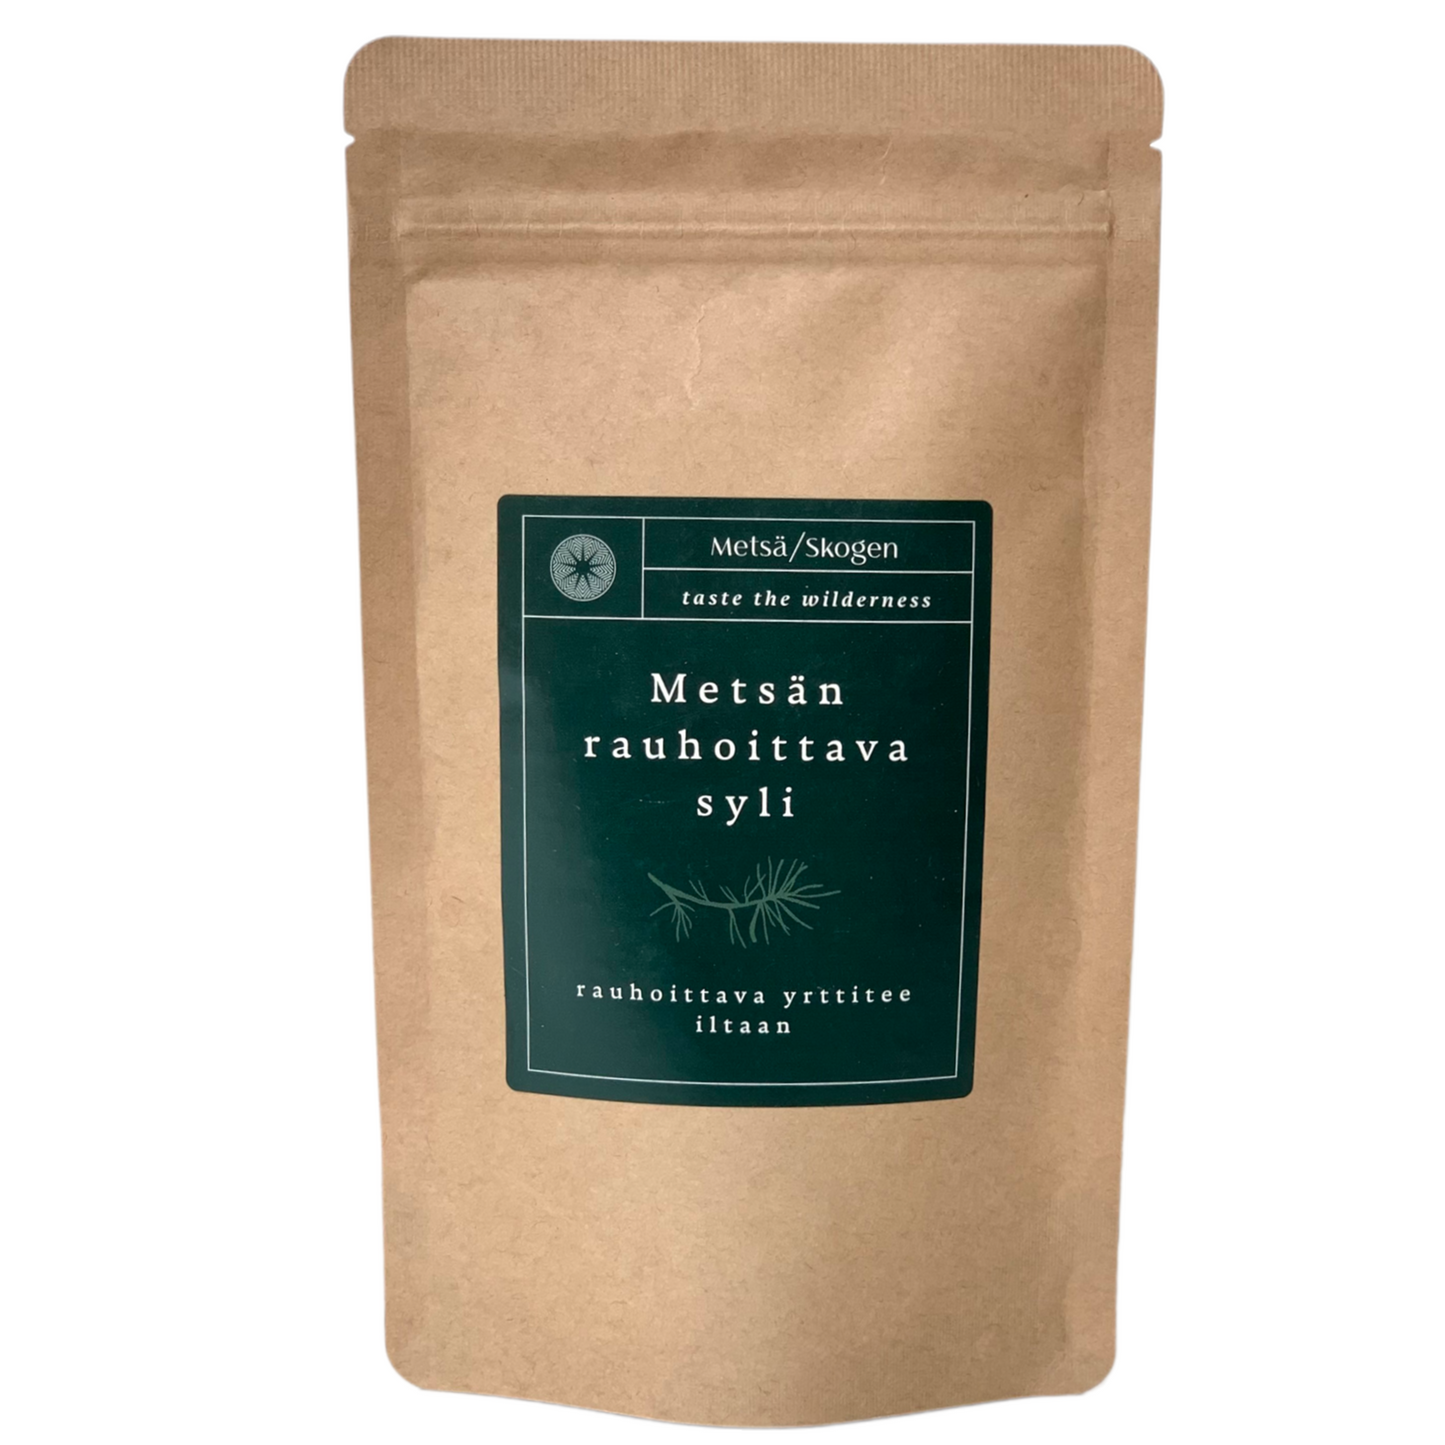 Metsä/Skogen Soothing Forest Embrace Herbal Tea